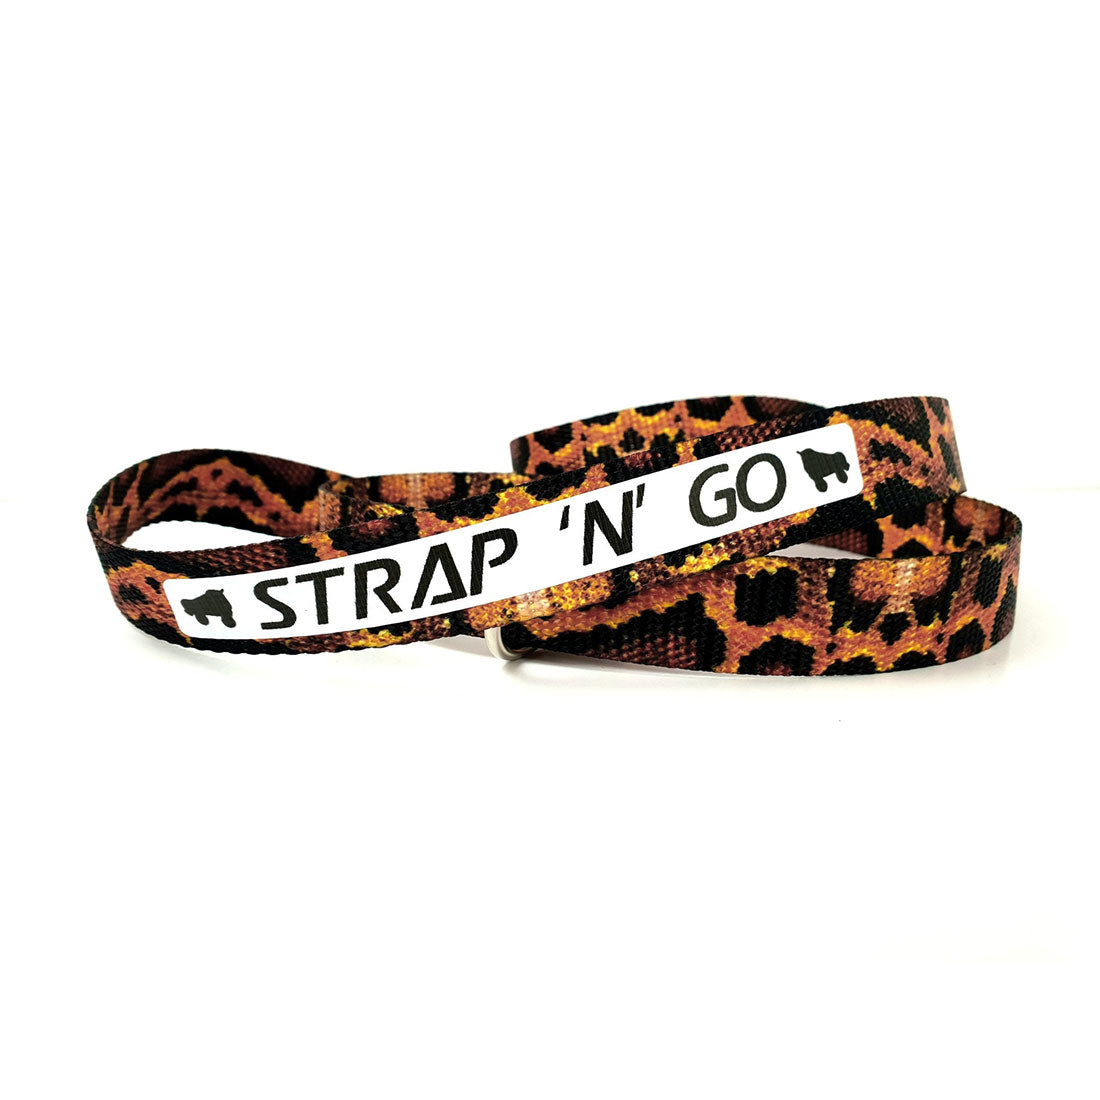 Strap N Go Skate Noose/Leash - Patterns Boa Roller Skate Accessories